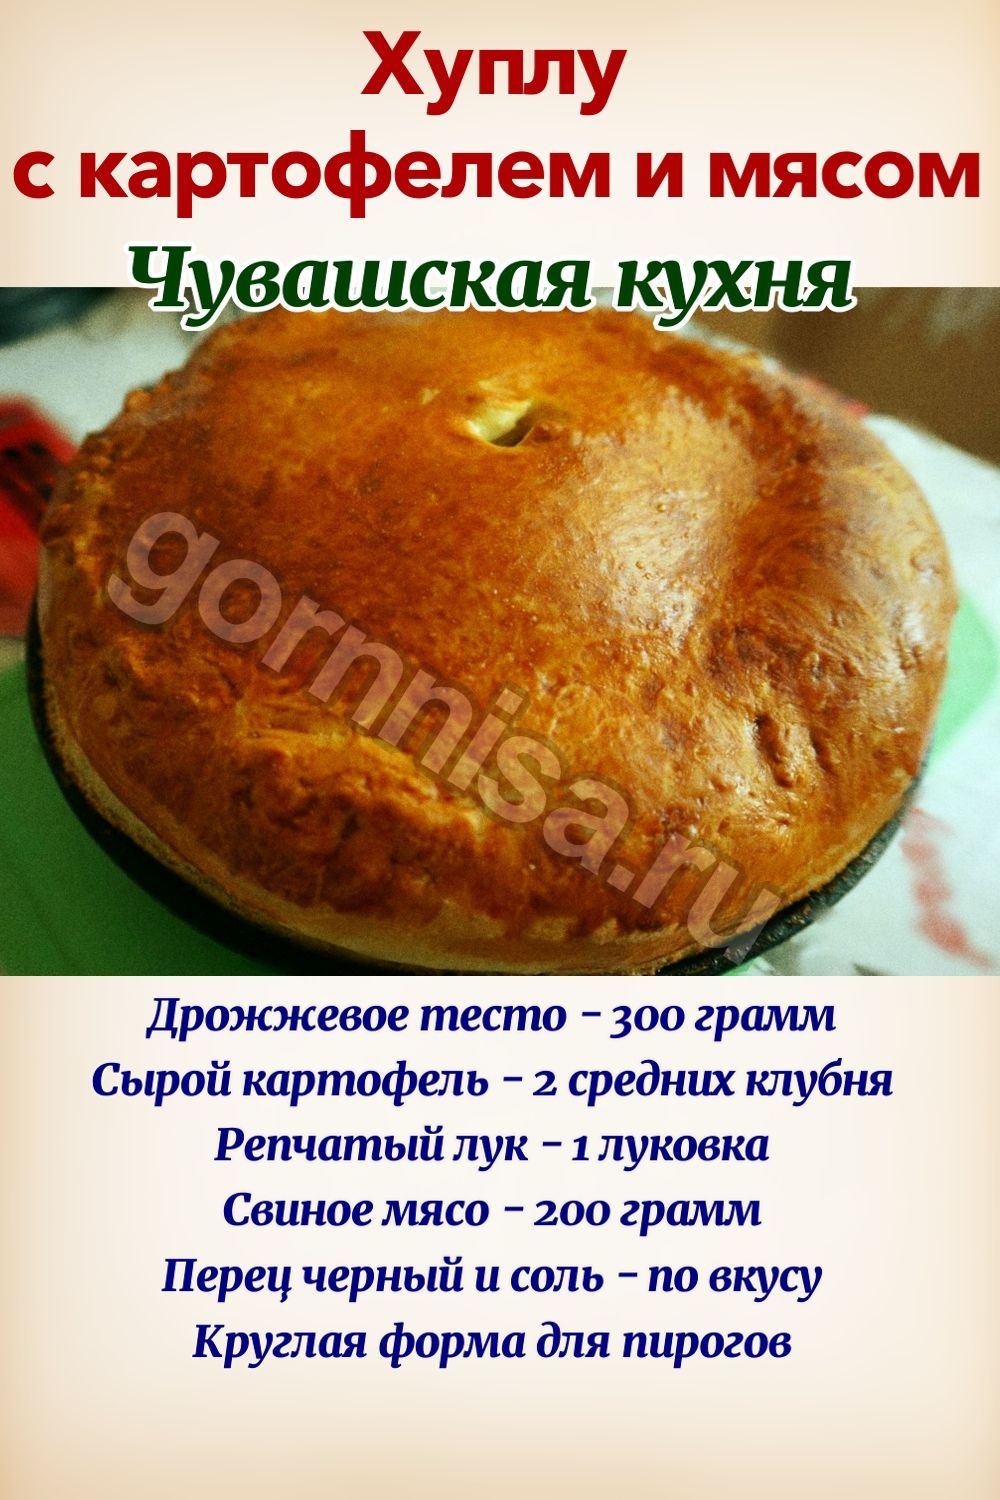 Хуплу с картофелем и мясом - чувашская кухня